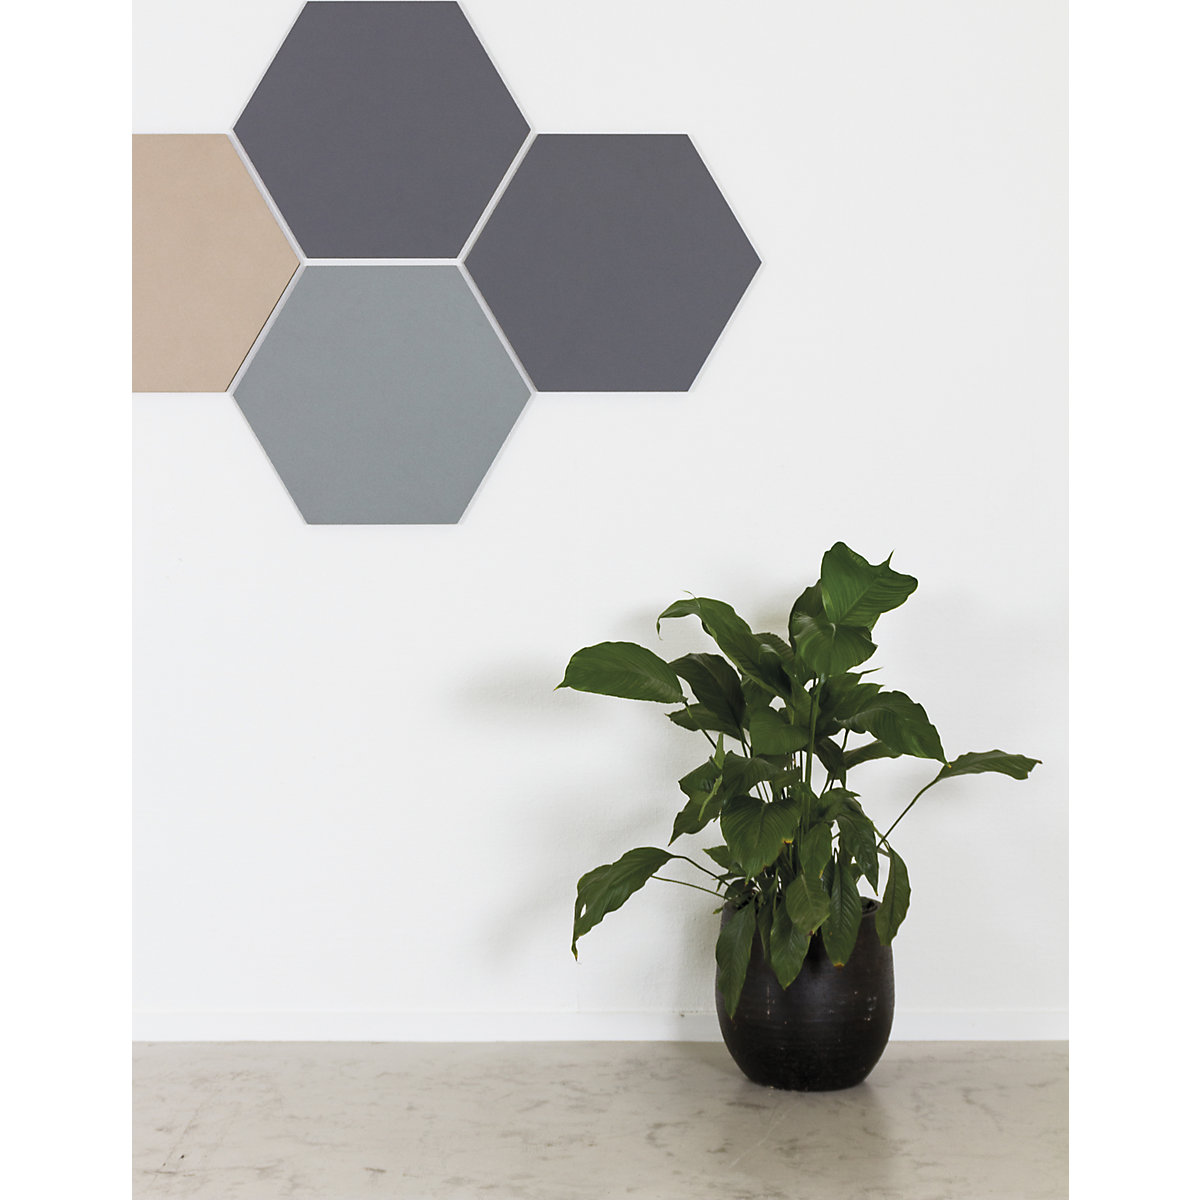 Hexagonal designer pin board – Chameleon (Product illustration 13)-12